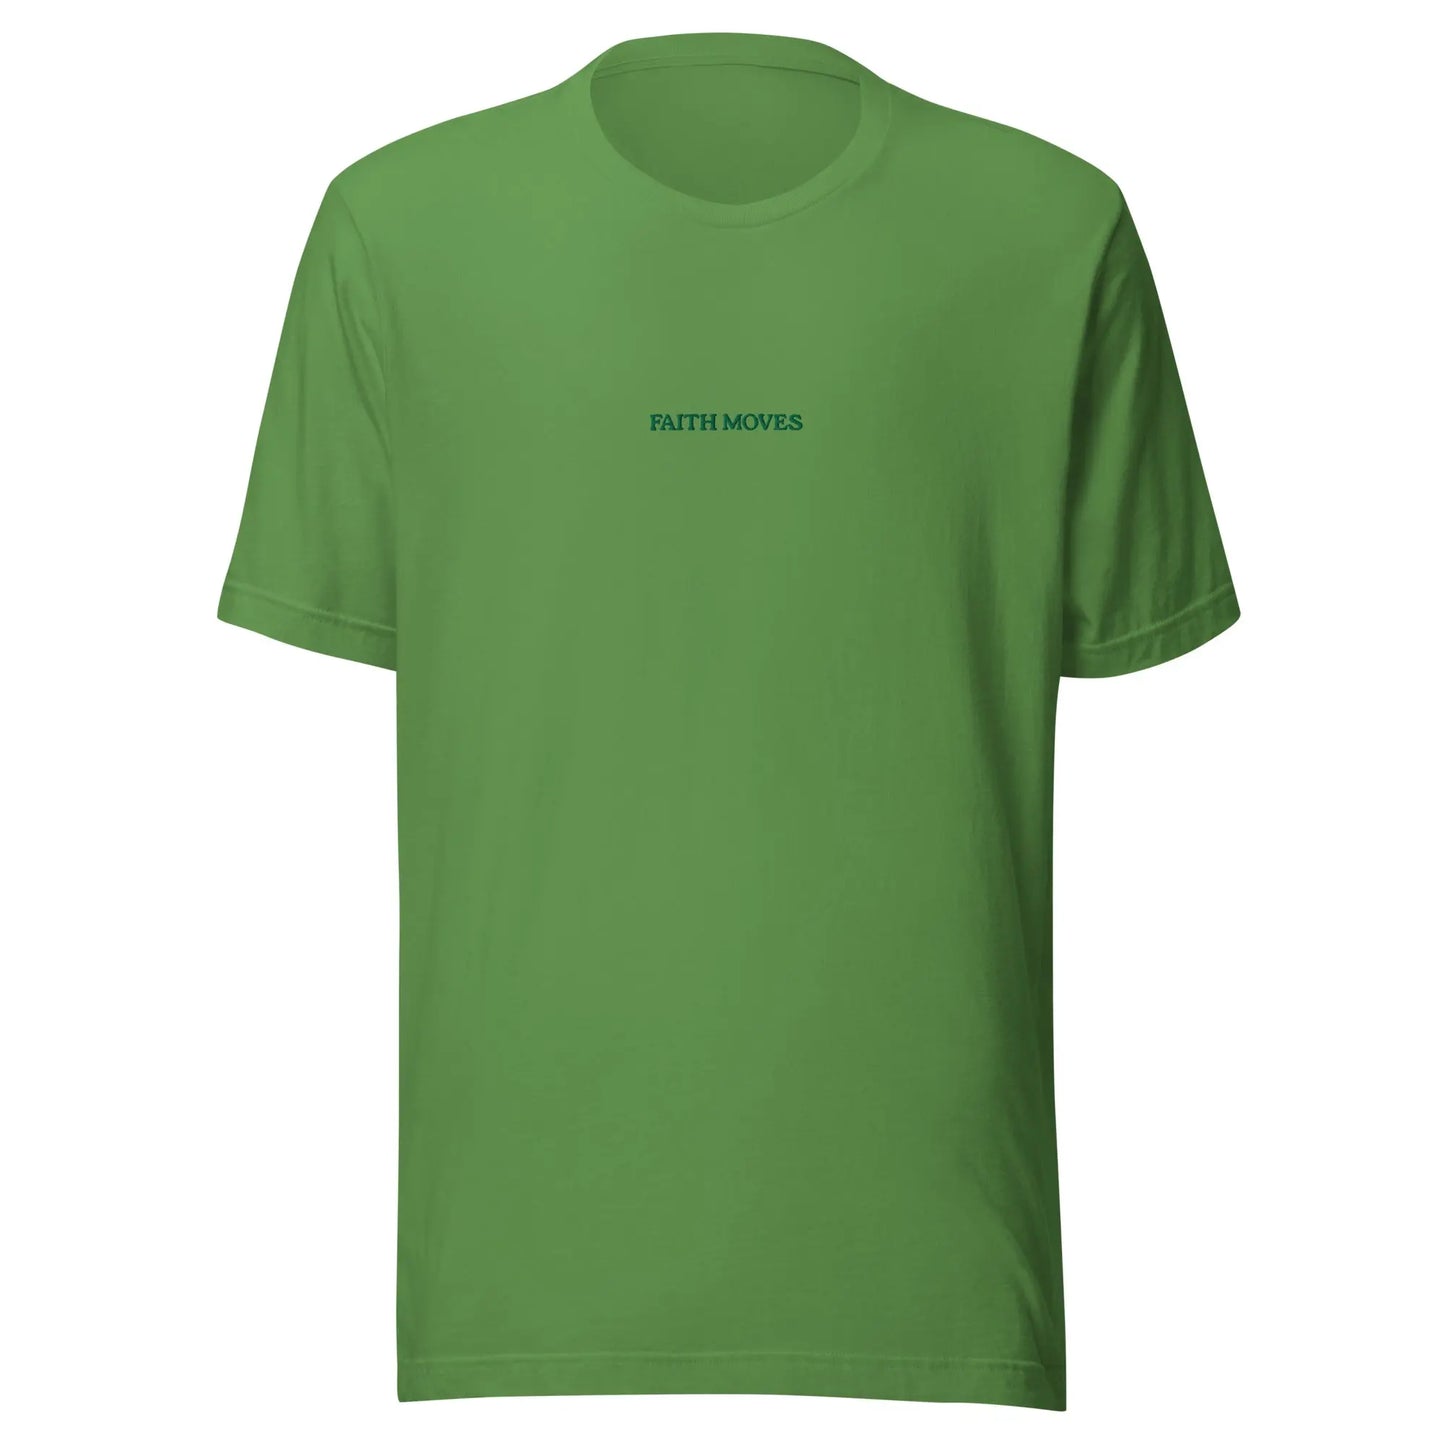 Unisex GREEN FAITH MOVES t-shirt